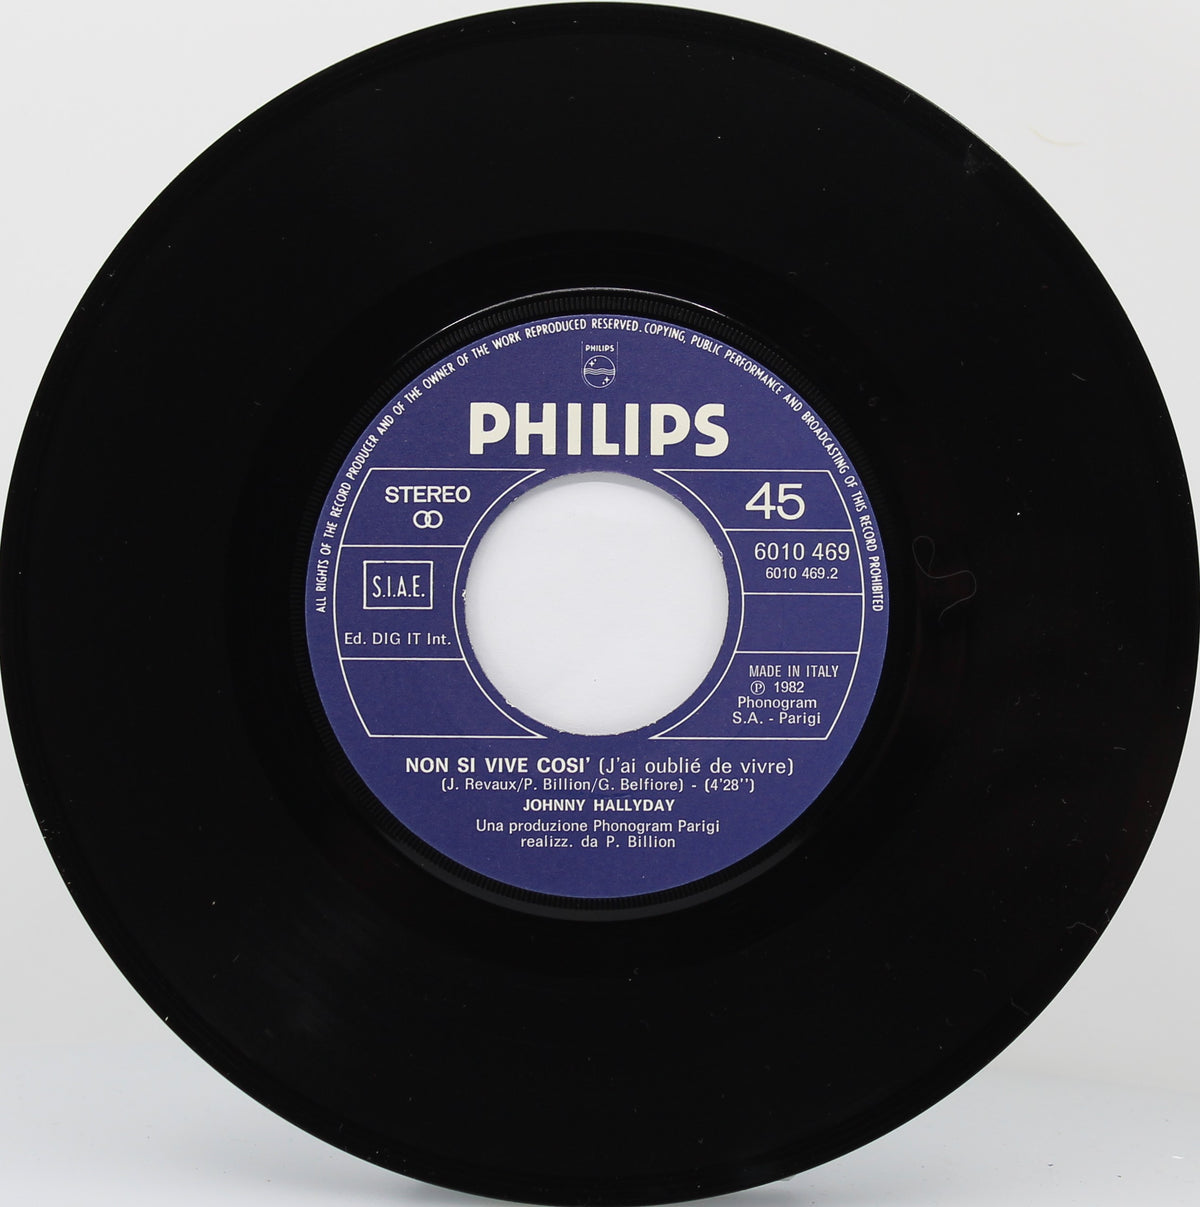 Johnny Hallyday – Solo Una Preghiera, Vinyl, 7&quot;, 45 RPM, Italy 1982